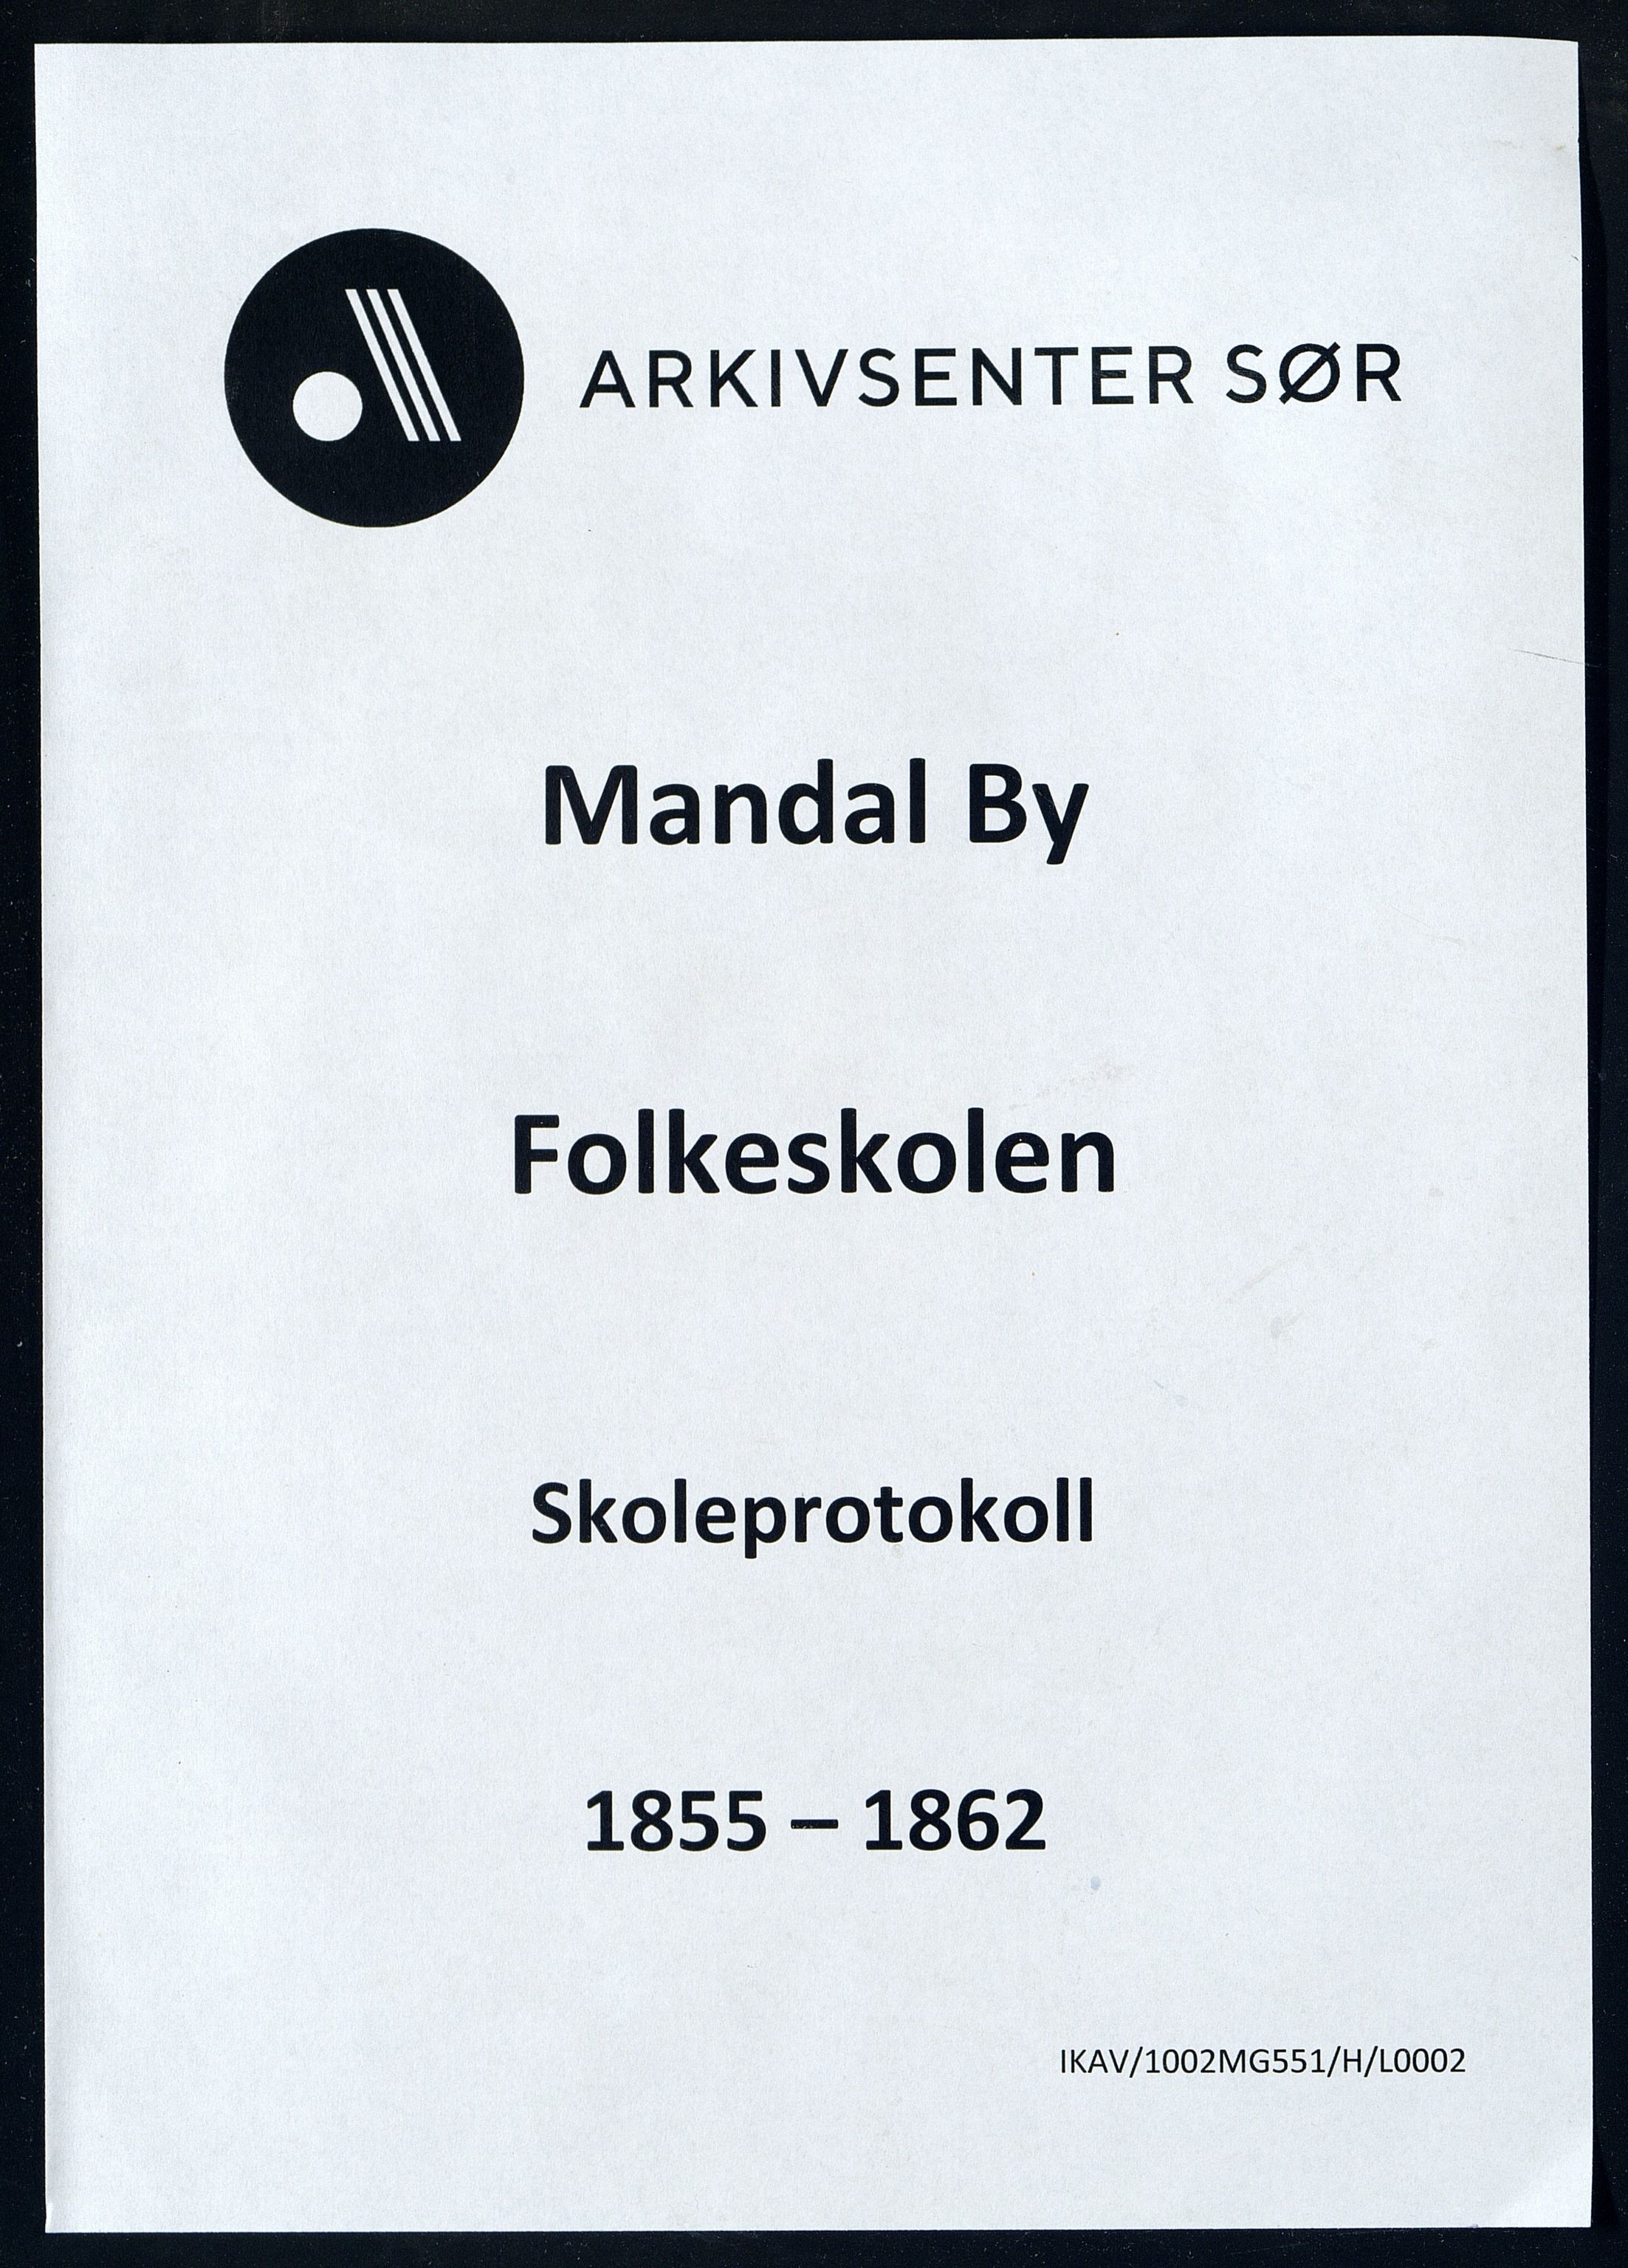 Mandal By - Mandal Allmueskole/Folkeskole/Skole, IKAV/1002MG551/H/L0002: Skoleprotokoll, 1855-1862